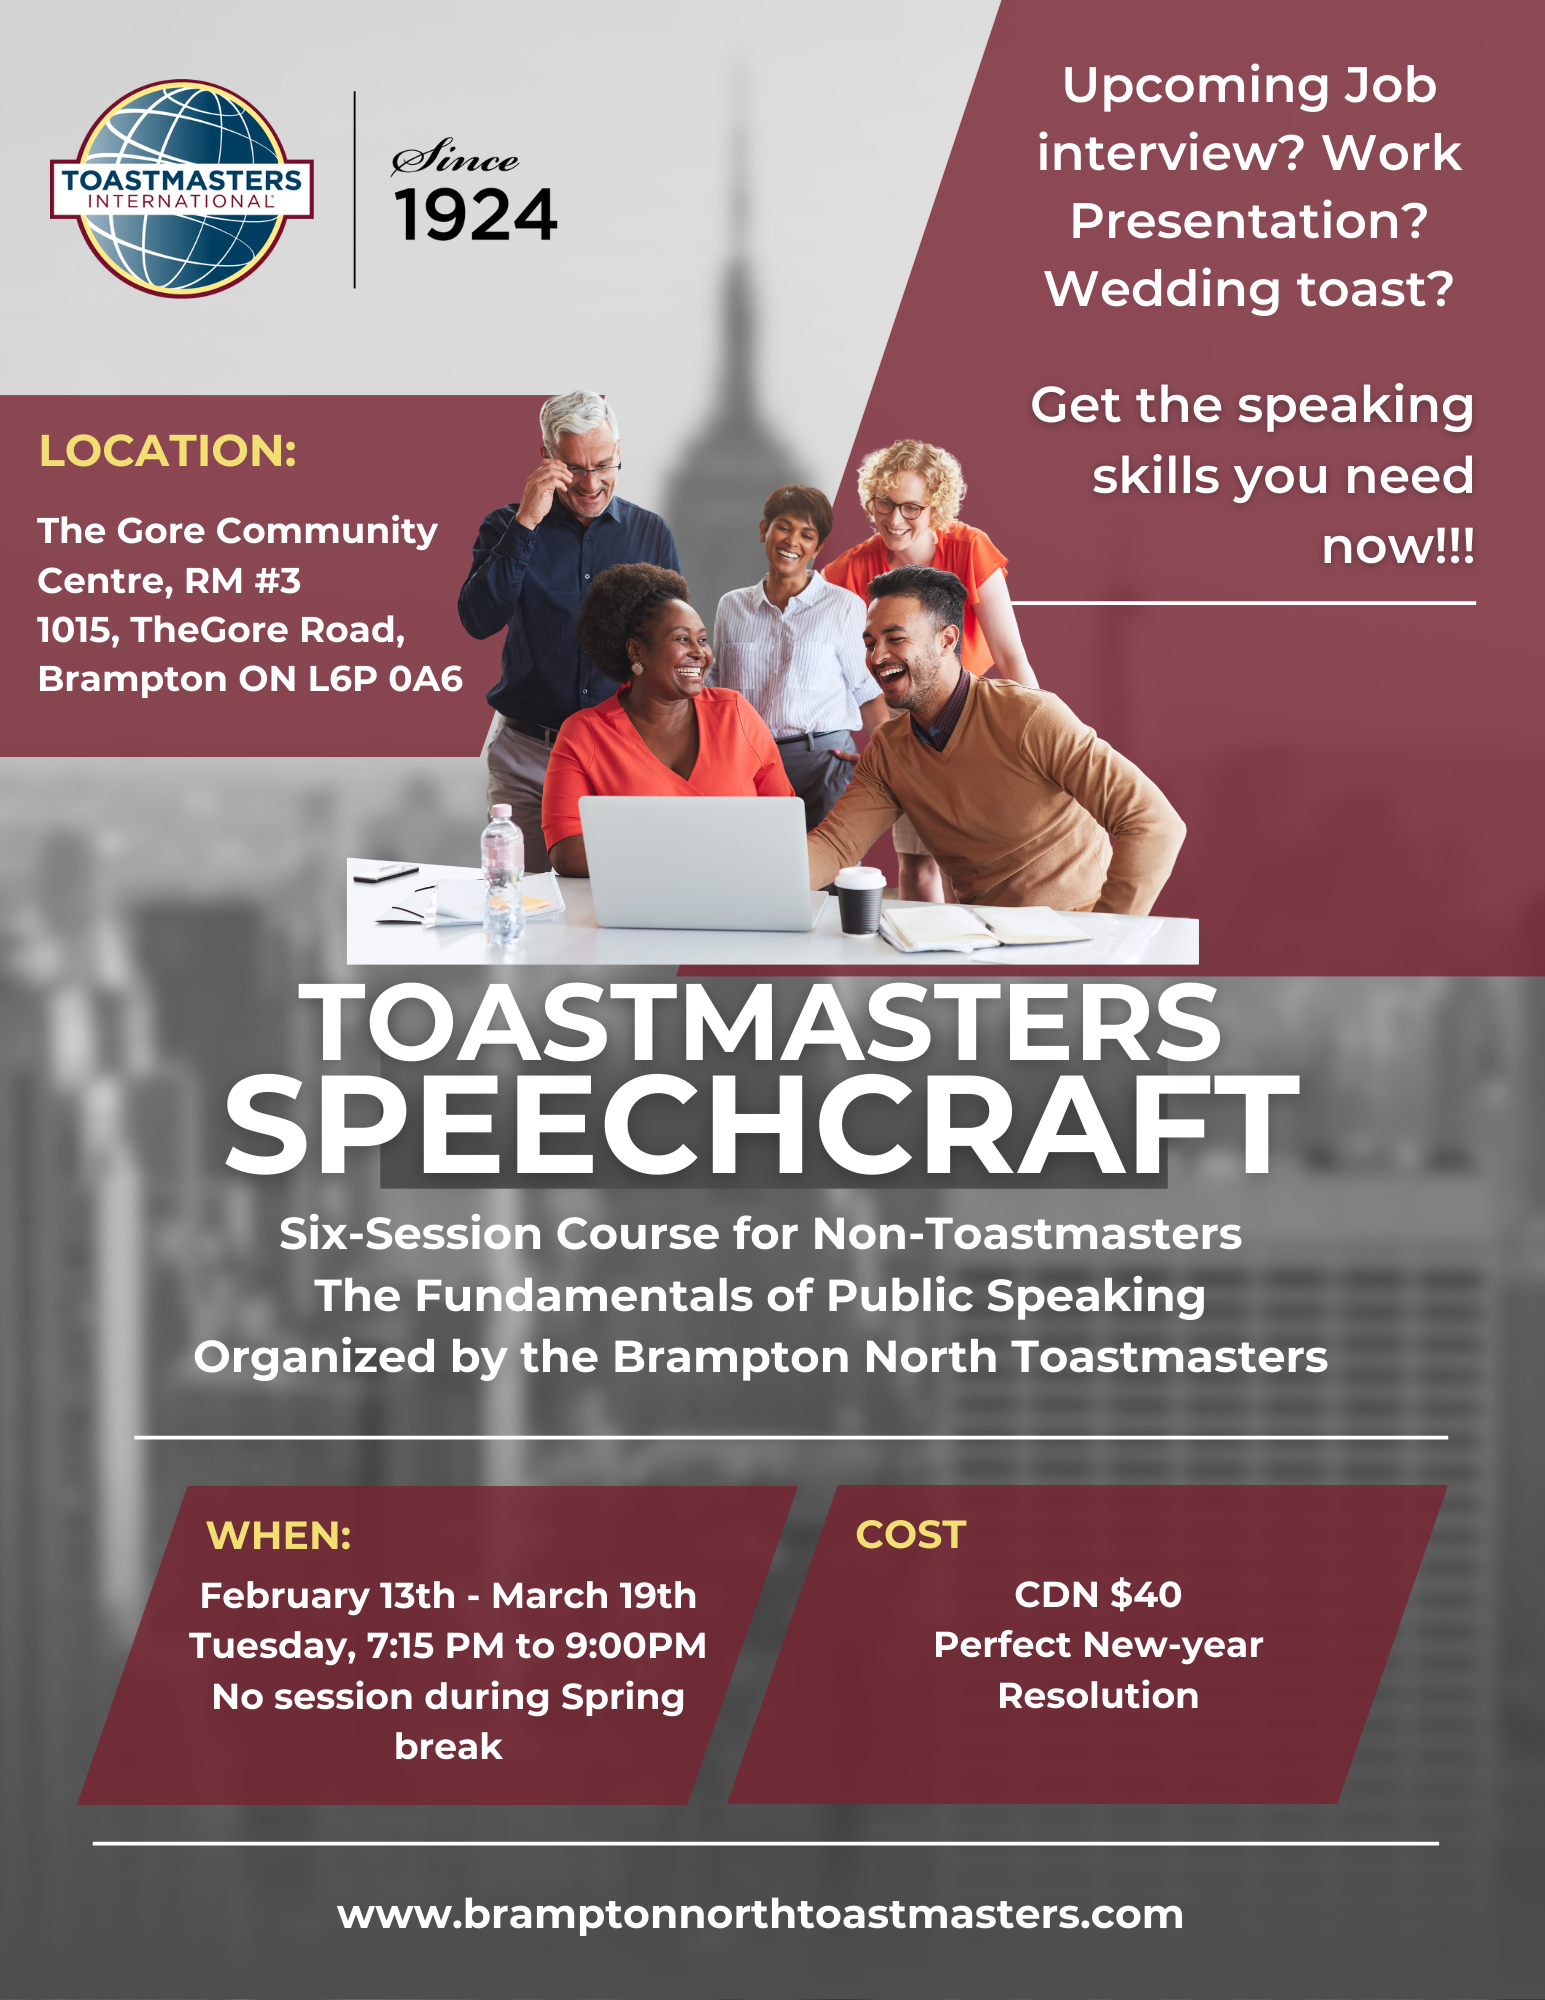 Toastmasters speechcraft